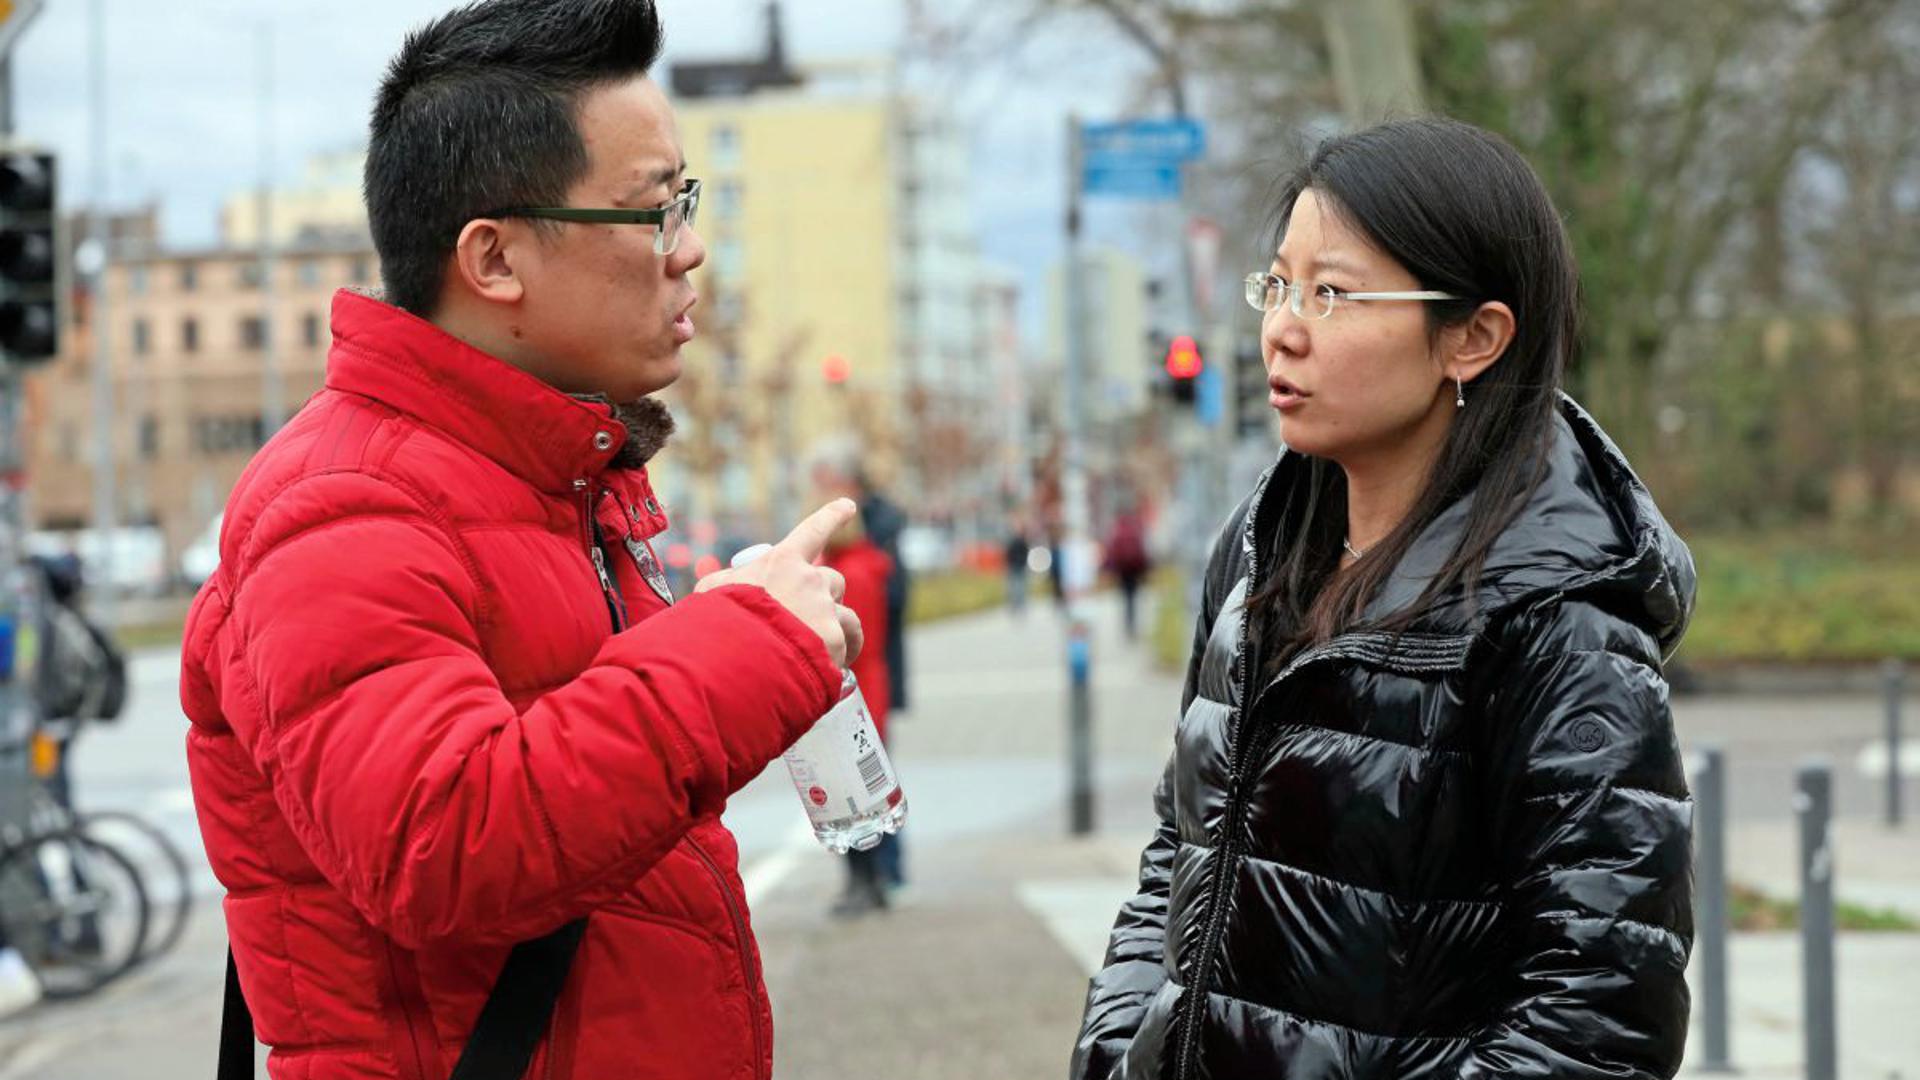 Der in Wuhan geborene Xian Gao beschäftigt sich in jeder freien Minute mit dem Geschehen rund um das Coronavirus. Auch in Gesprächen mit seiner Frau Kaidi Song geht es oft darum.